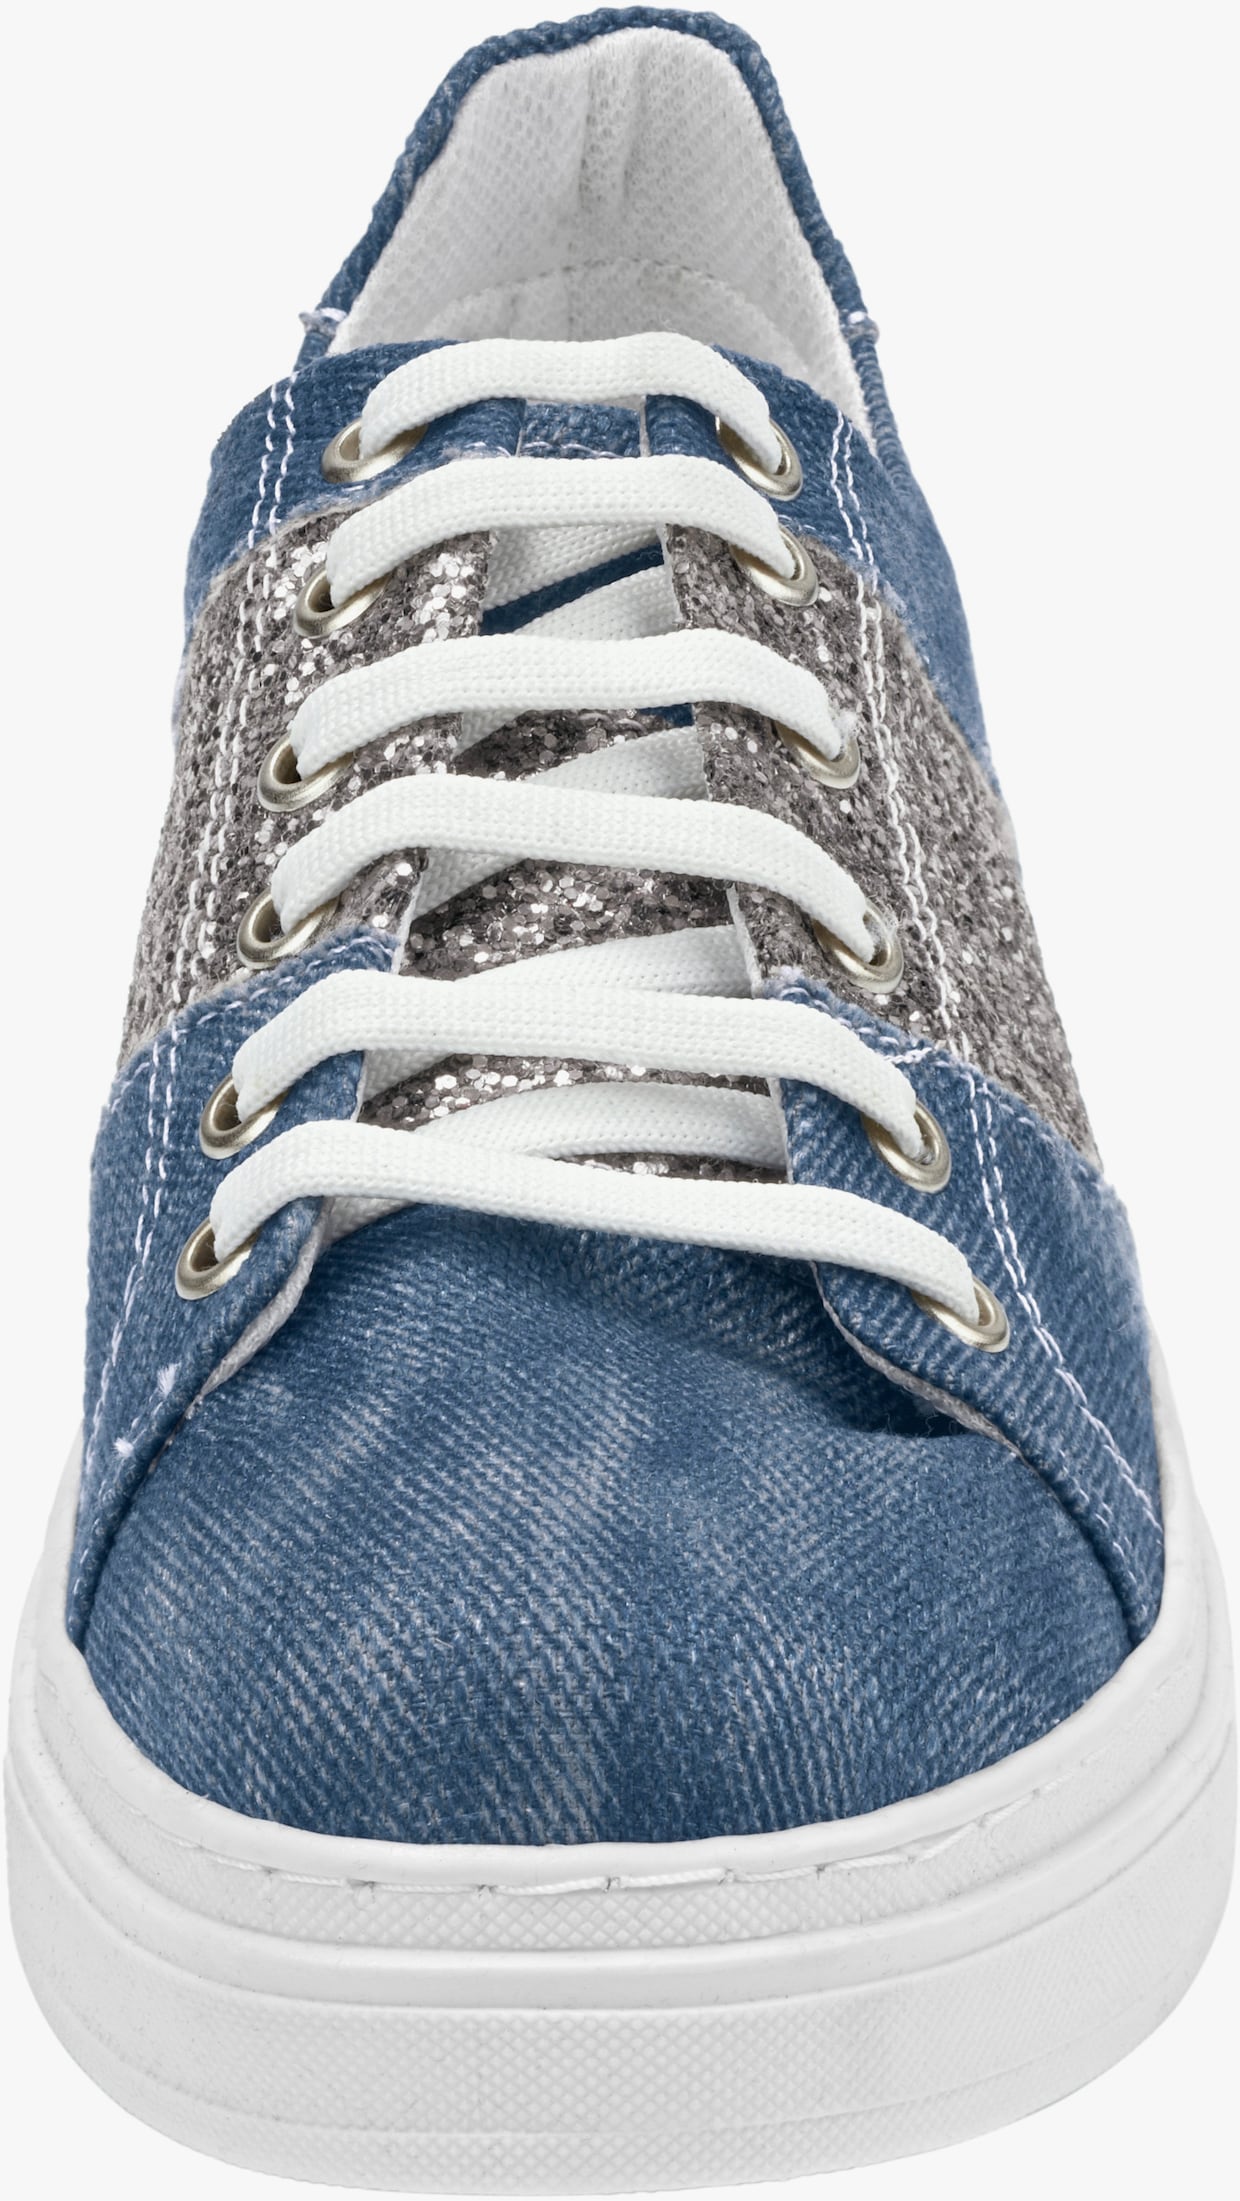 Andrea Conti Baskets - bleu jean-couleur argent